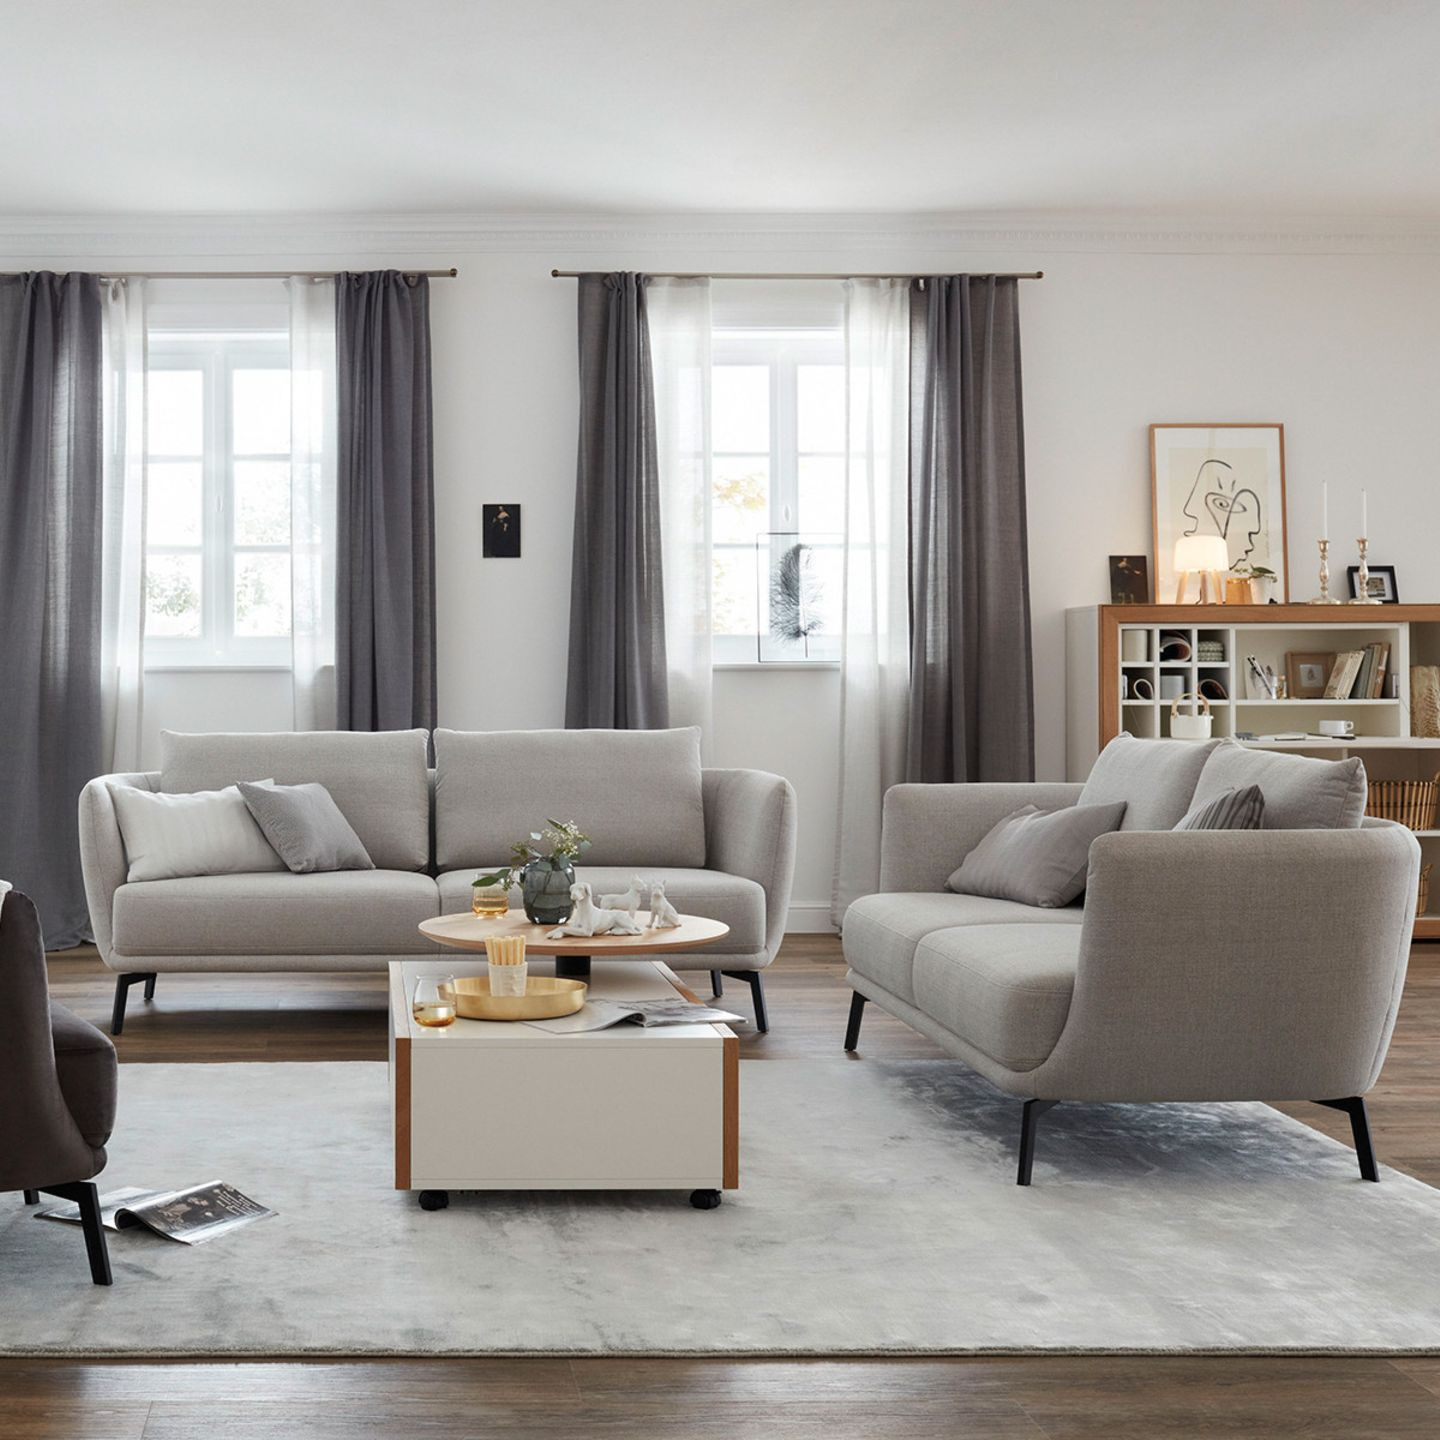 Wohnzimmer In Grau Und Creme - [Schöner Wohnen] pertaining to Beige Grau Wohnzimmer